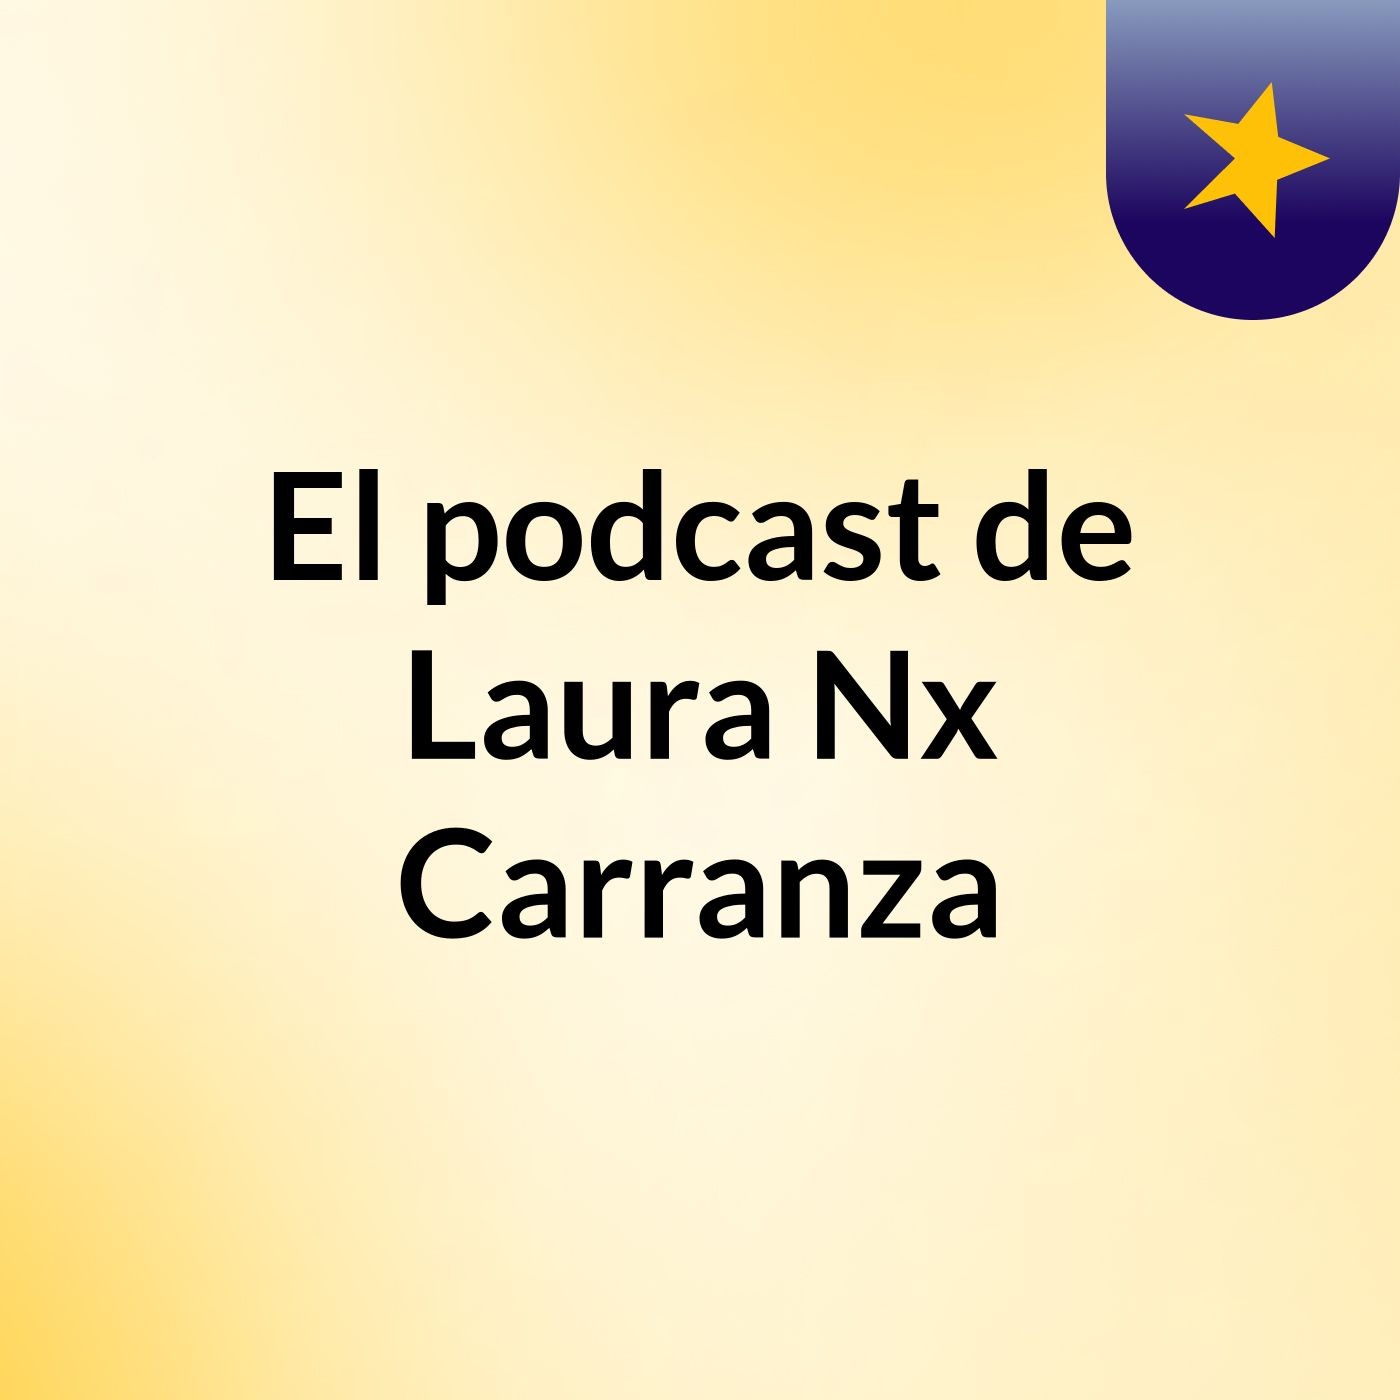 El podcast de Laura Nx Carranza